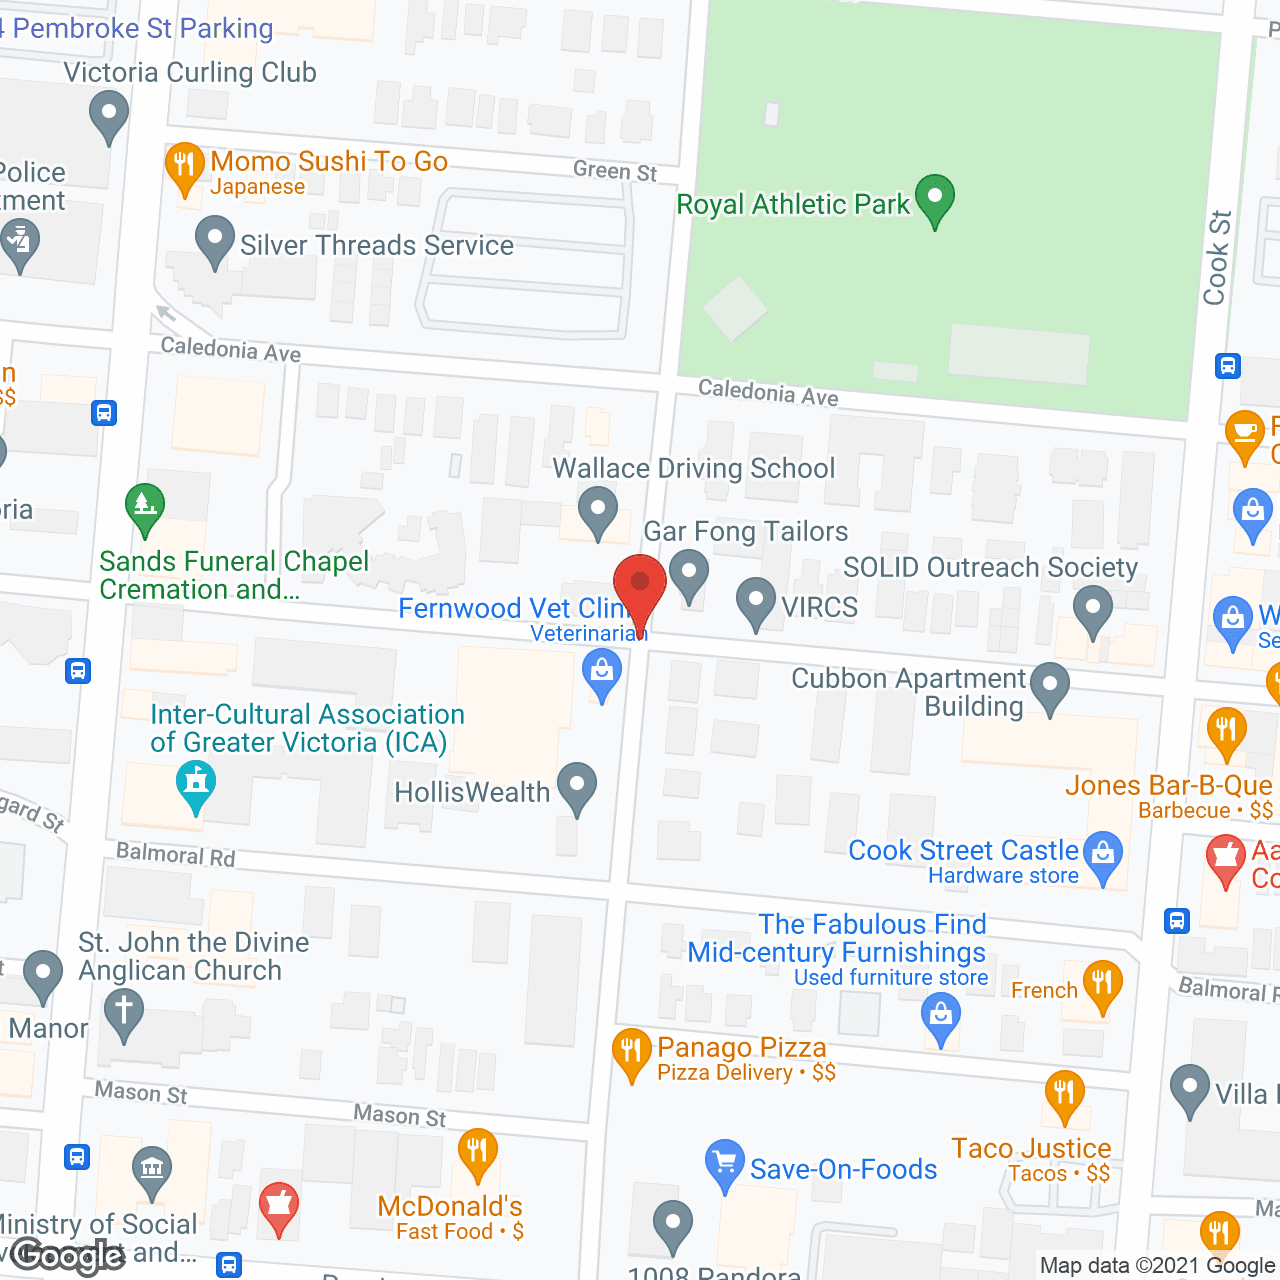 Balmoral Garden Court in google map